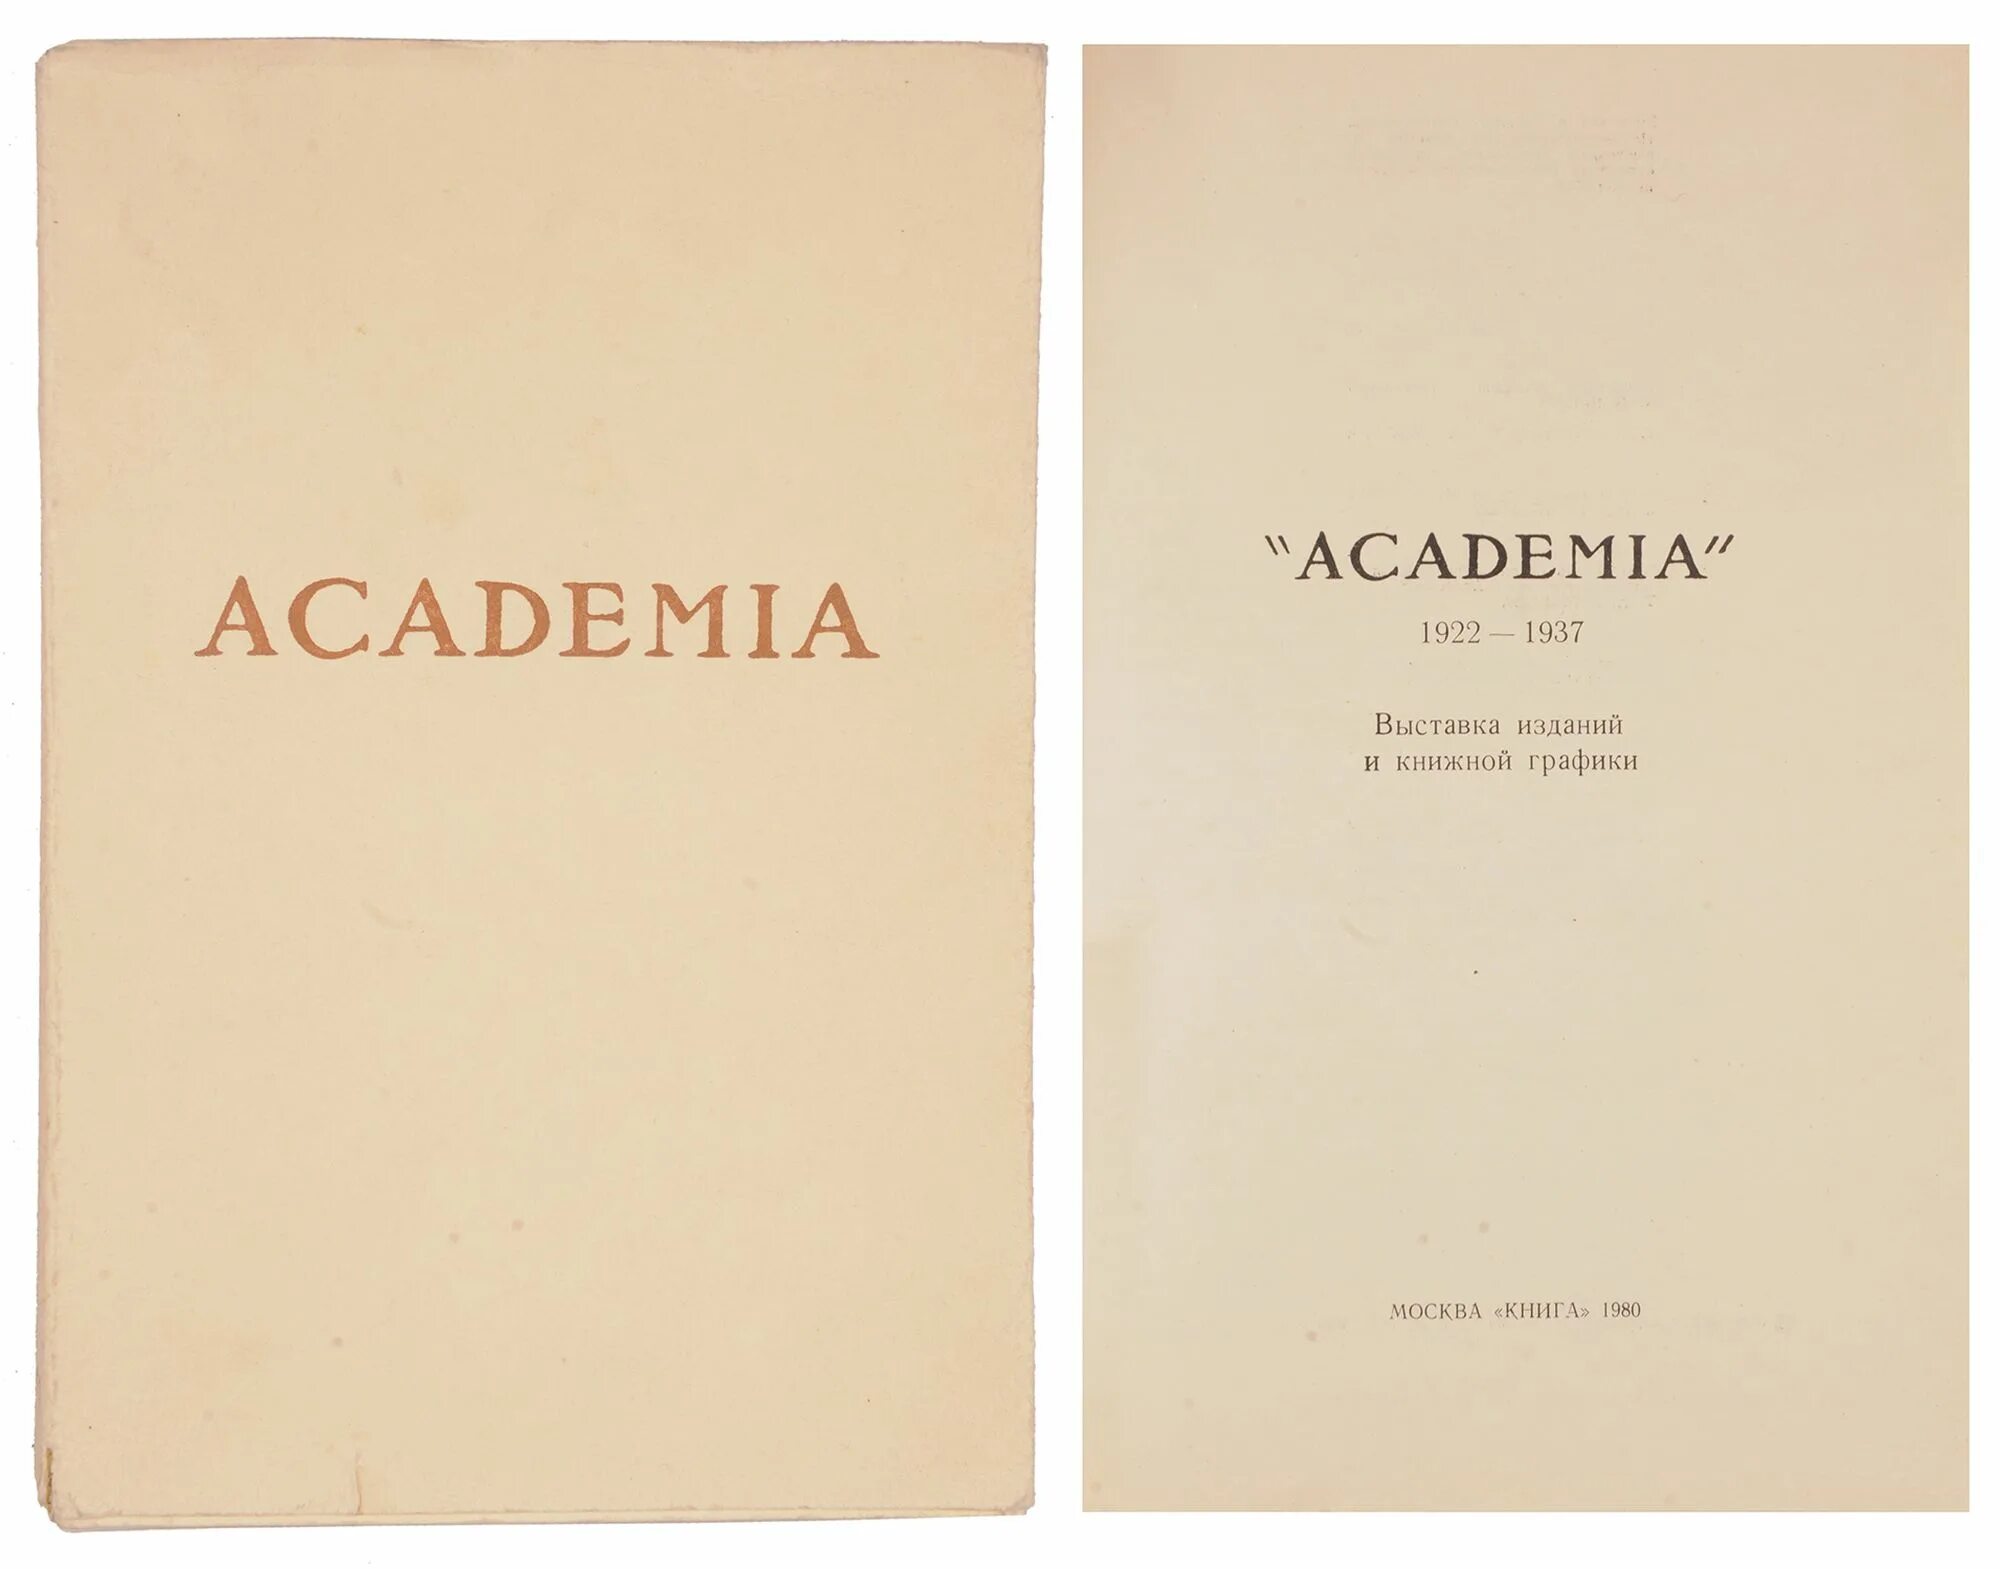 Час м книга. 1980 Книга. Издательство Академия 1922 год. Книги издательства Academia 1922-1938 продать. Наша книга 1980.